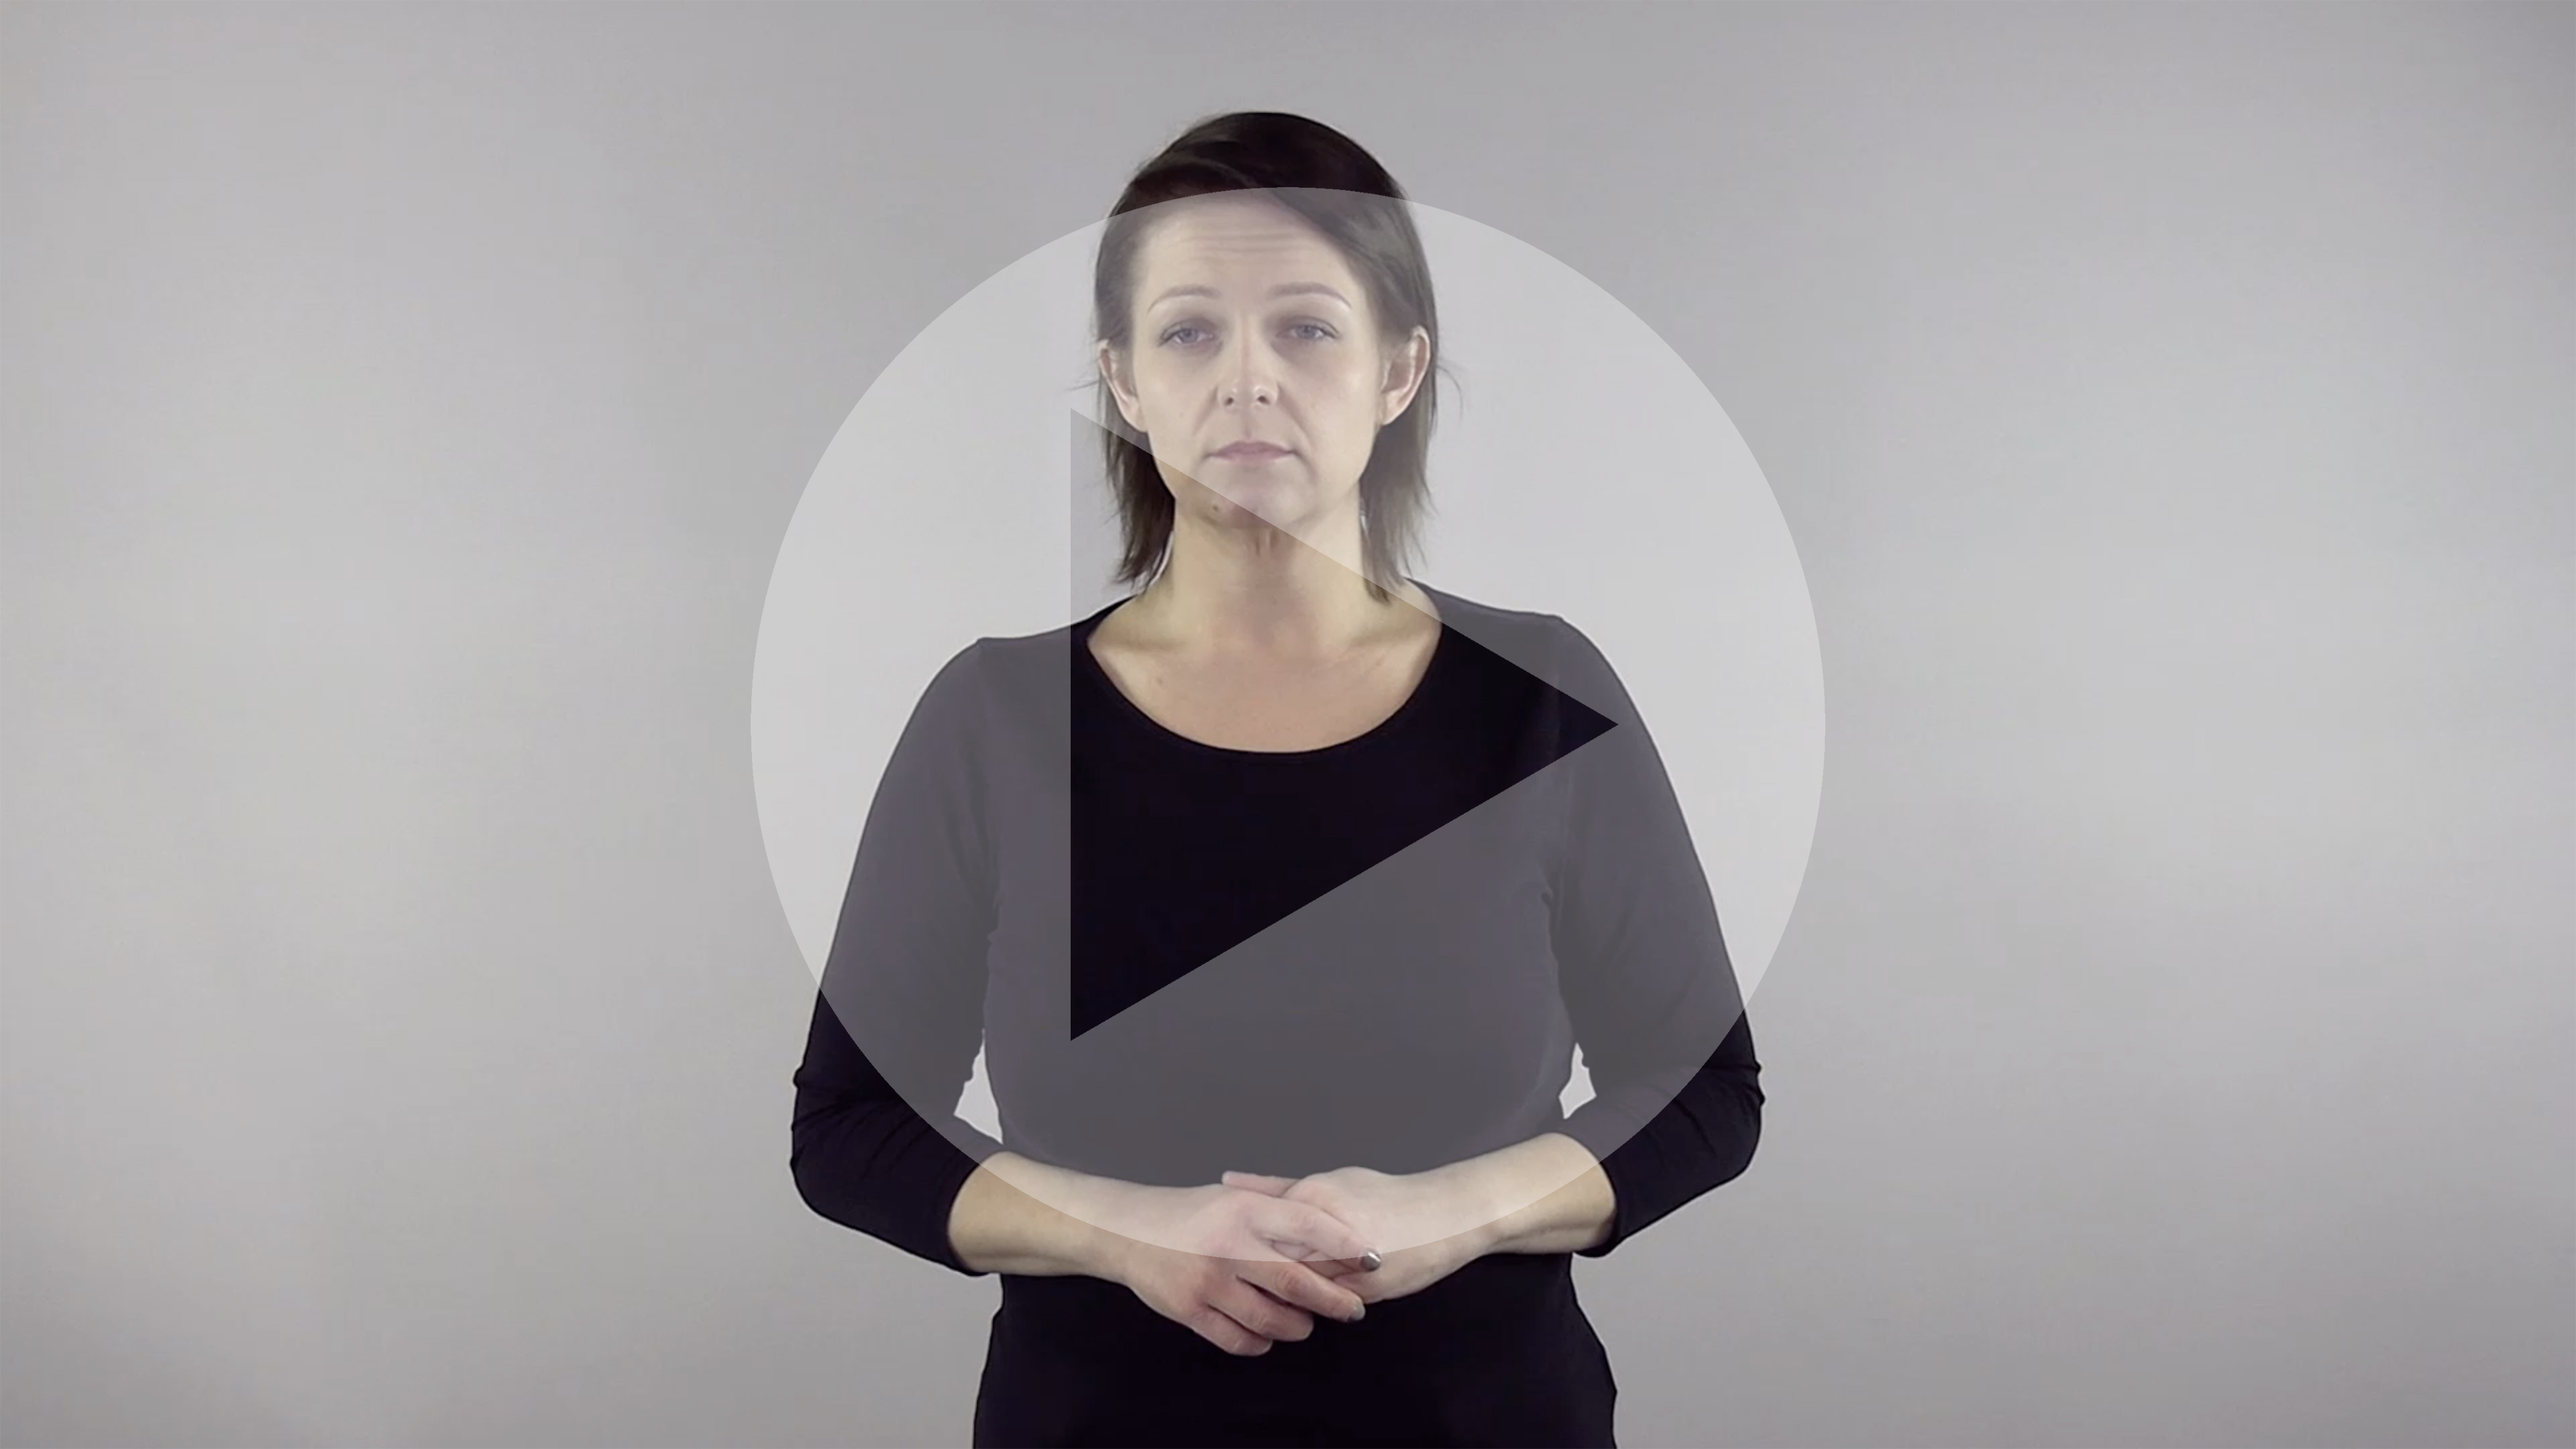 Kadr z nagrania przedstawiający kobietę porozumiewającą się w Polskim Języku Migowym z naniesionym symbolem odtwarzania wideo - trójkątem w kole